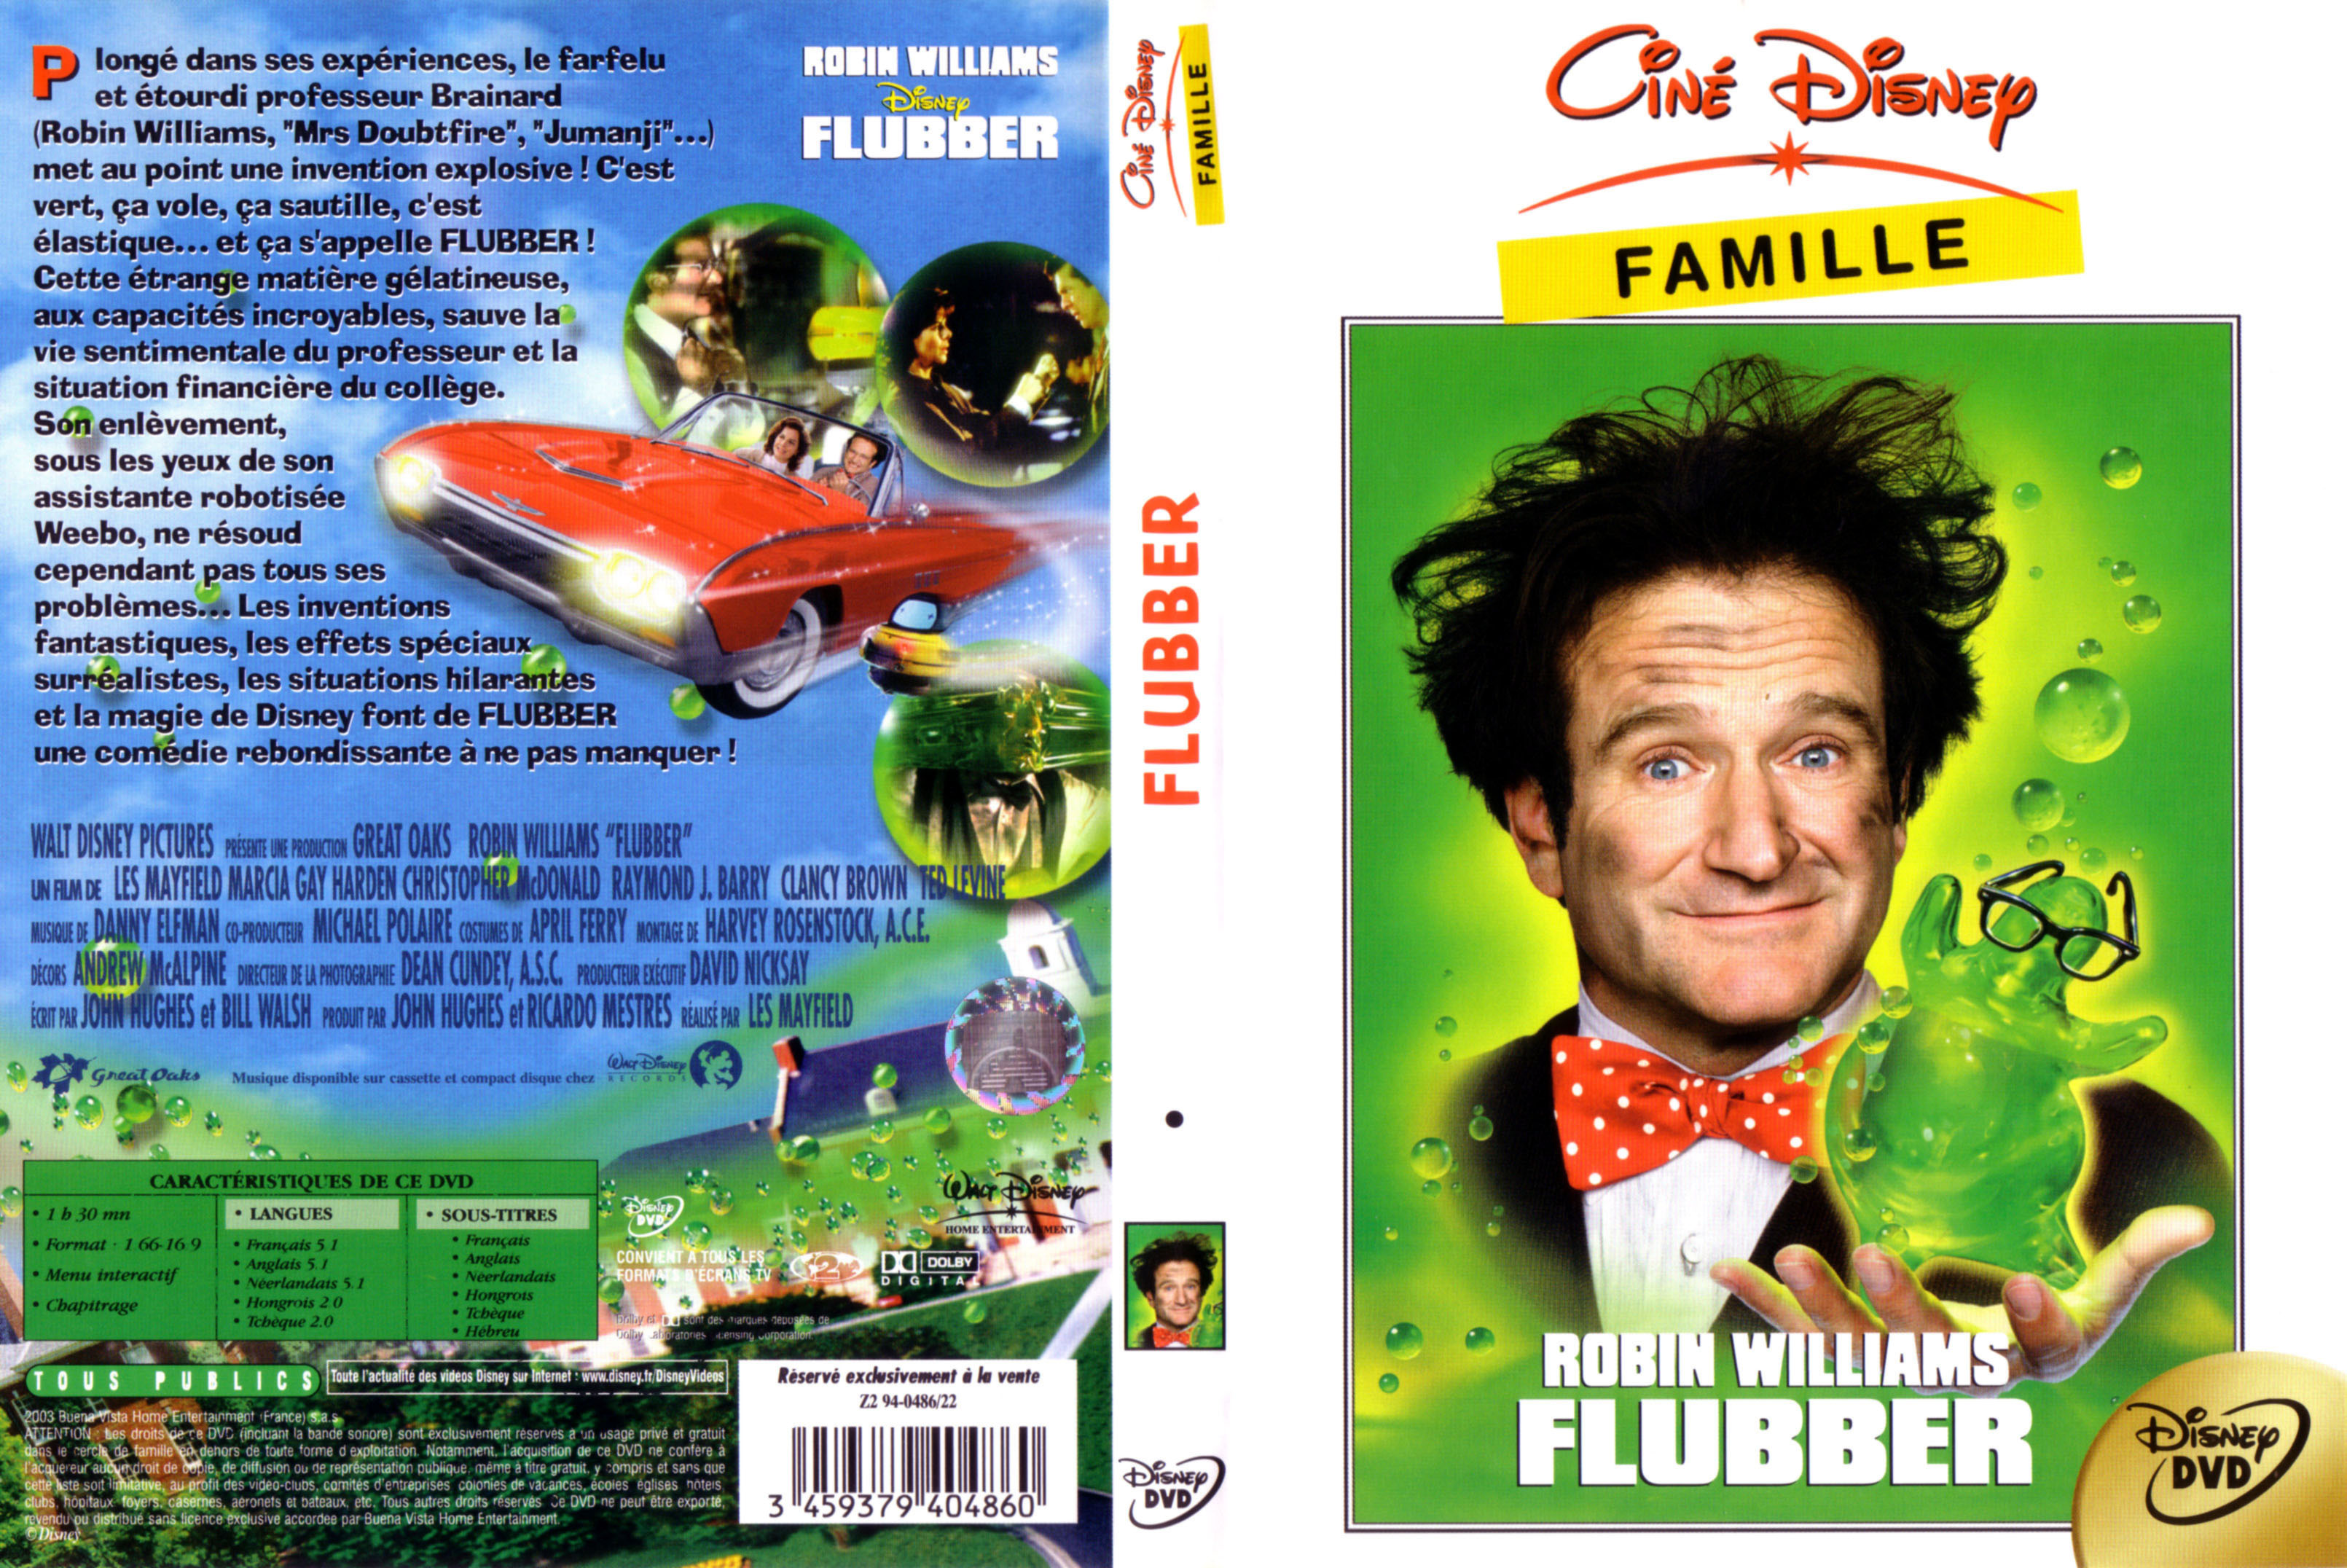 Jaquette DVD Flubber v4